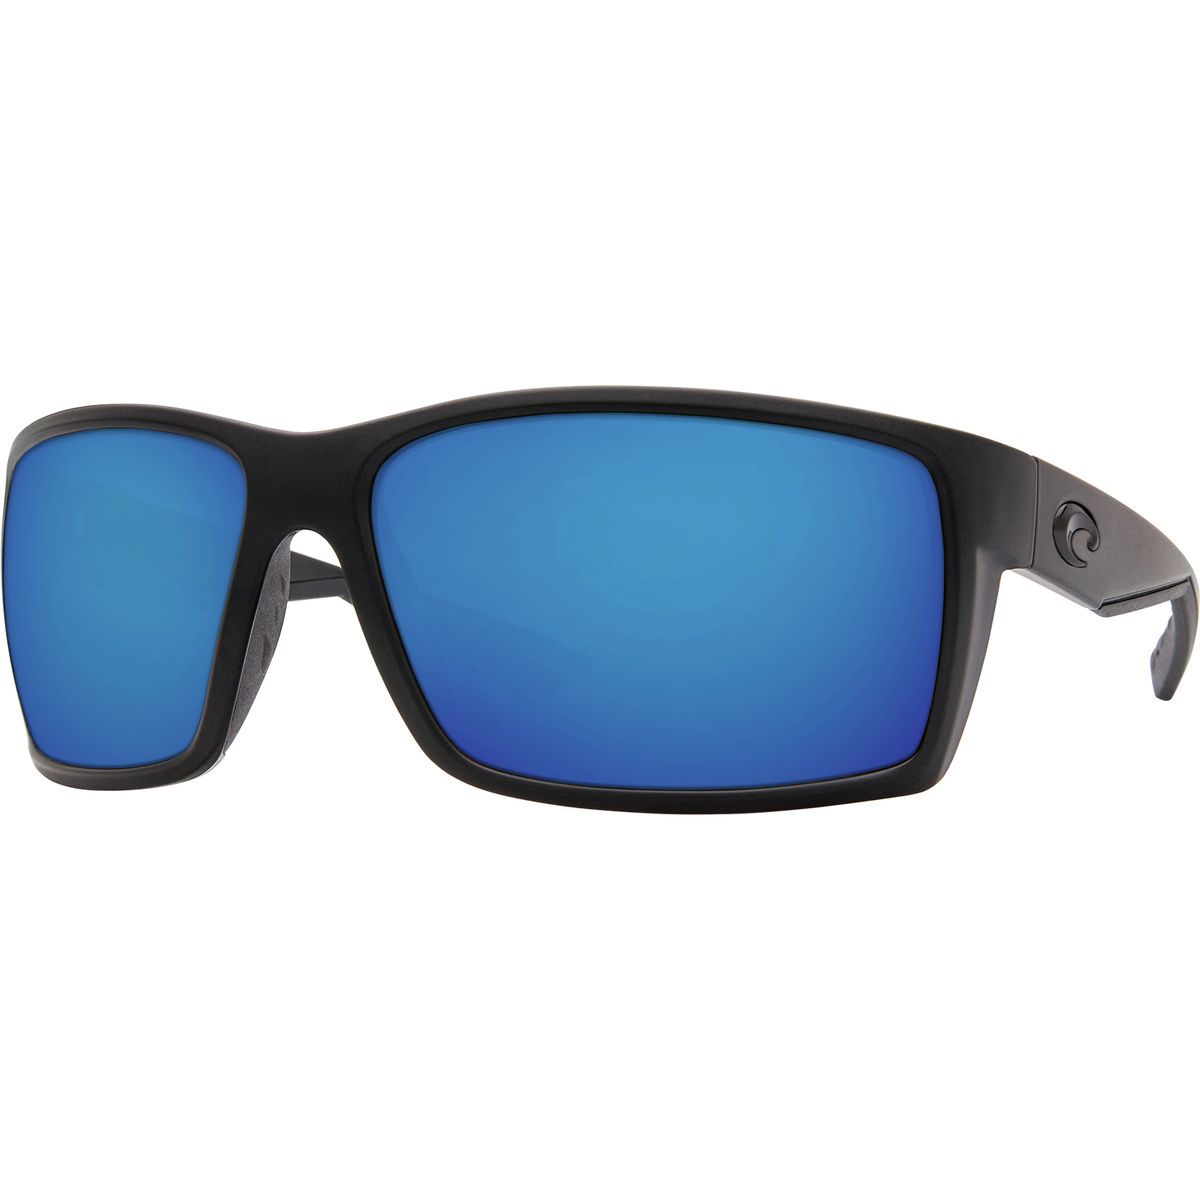 Поляризованные солнцезащитные очки Reefton 580G Costa